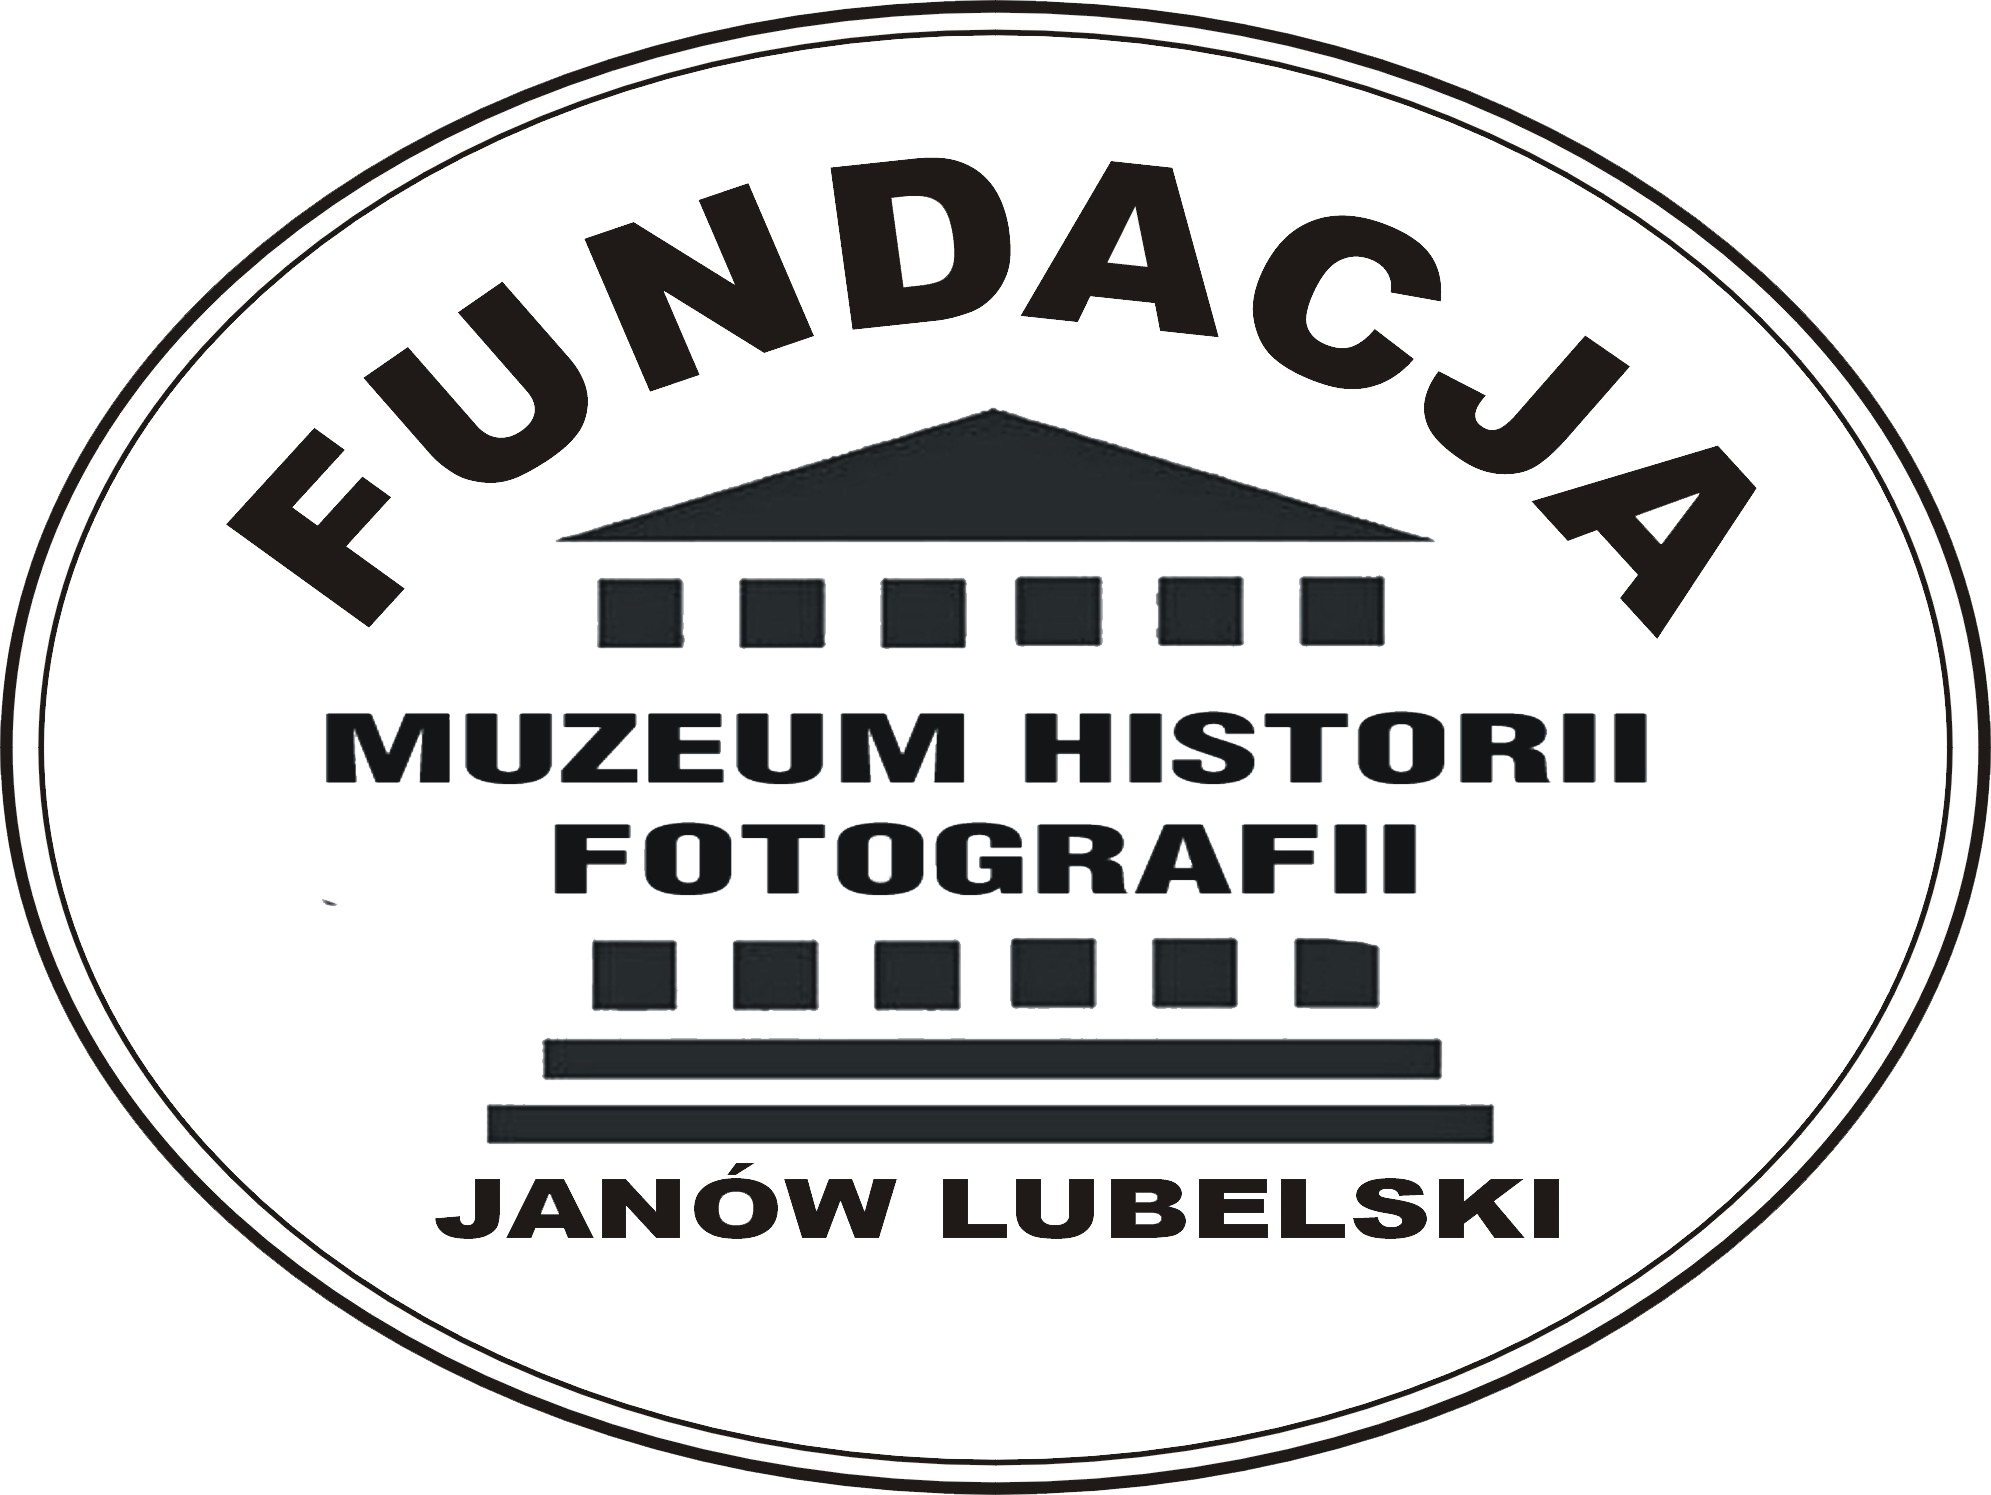 Logo Fundacji Muzeum Historii Fotografii. W okręgu piktogram przedstawiający budynek wraz z wymienioną już nazwą instytucji.